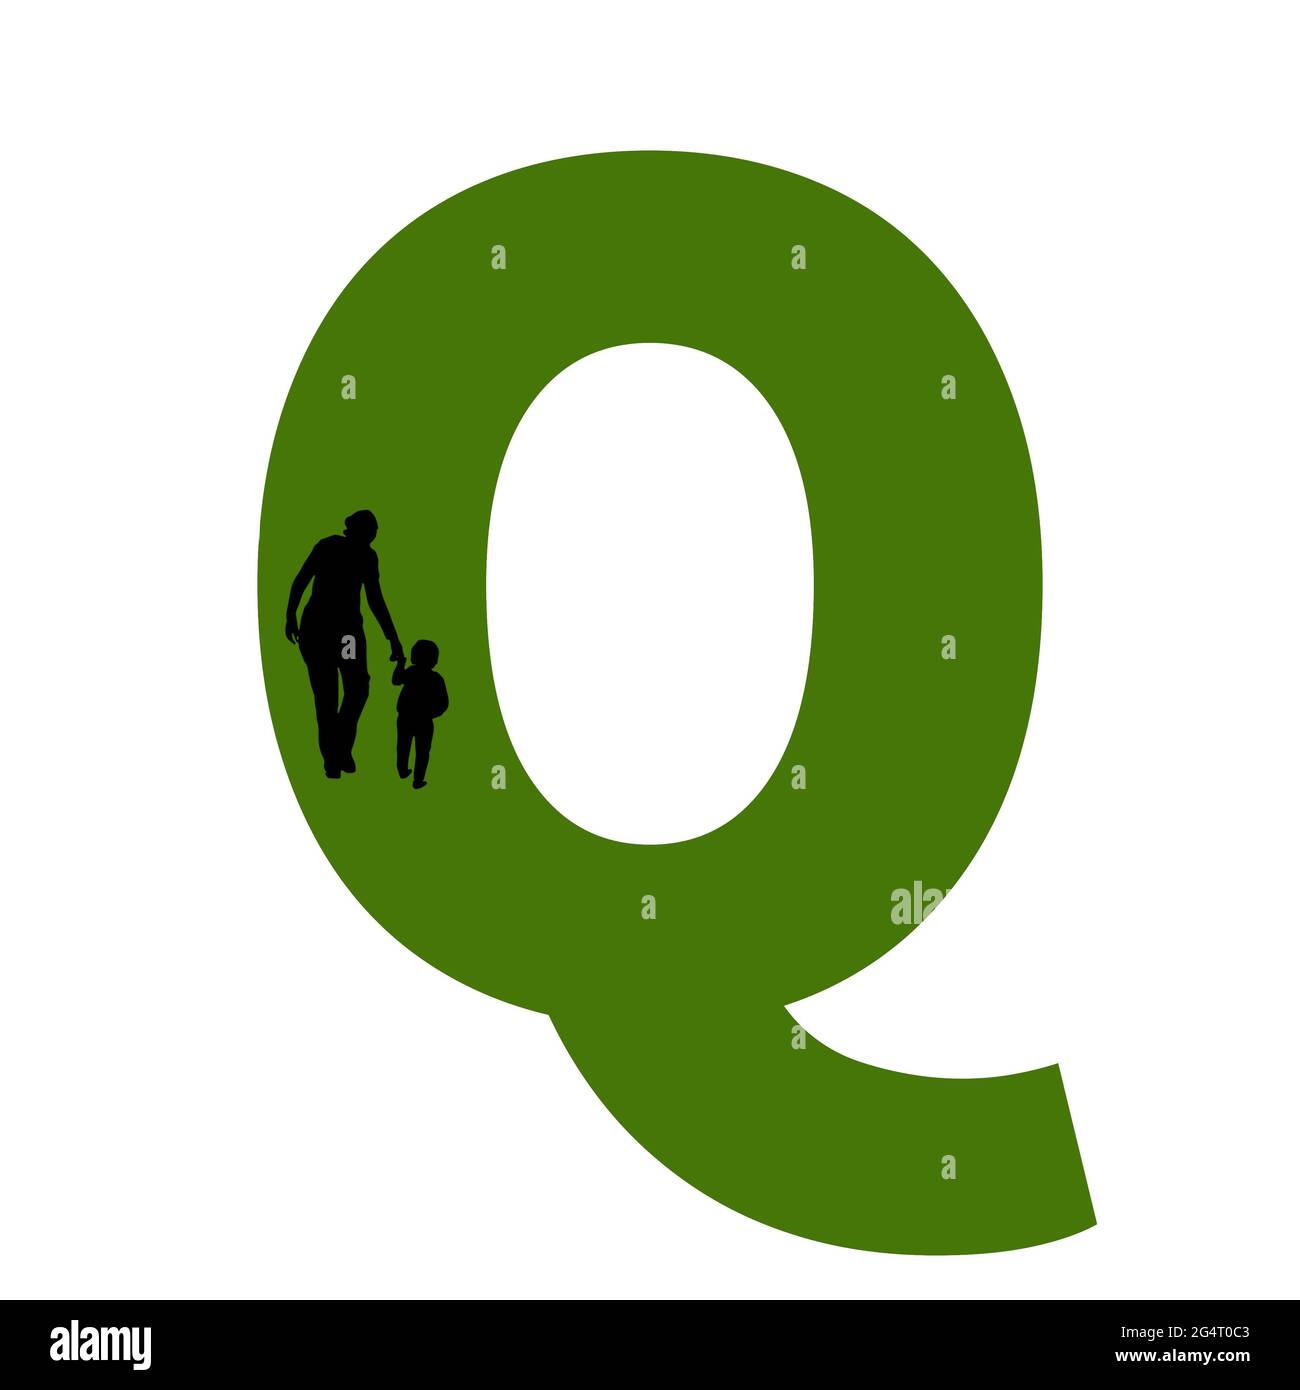 Lettera Q dell'alfabeto fatta con la sagoma di una madre e di un bambino che cammina, in verde e nero Foto Stock